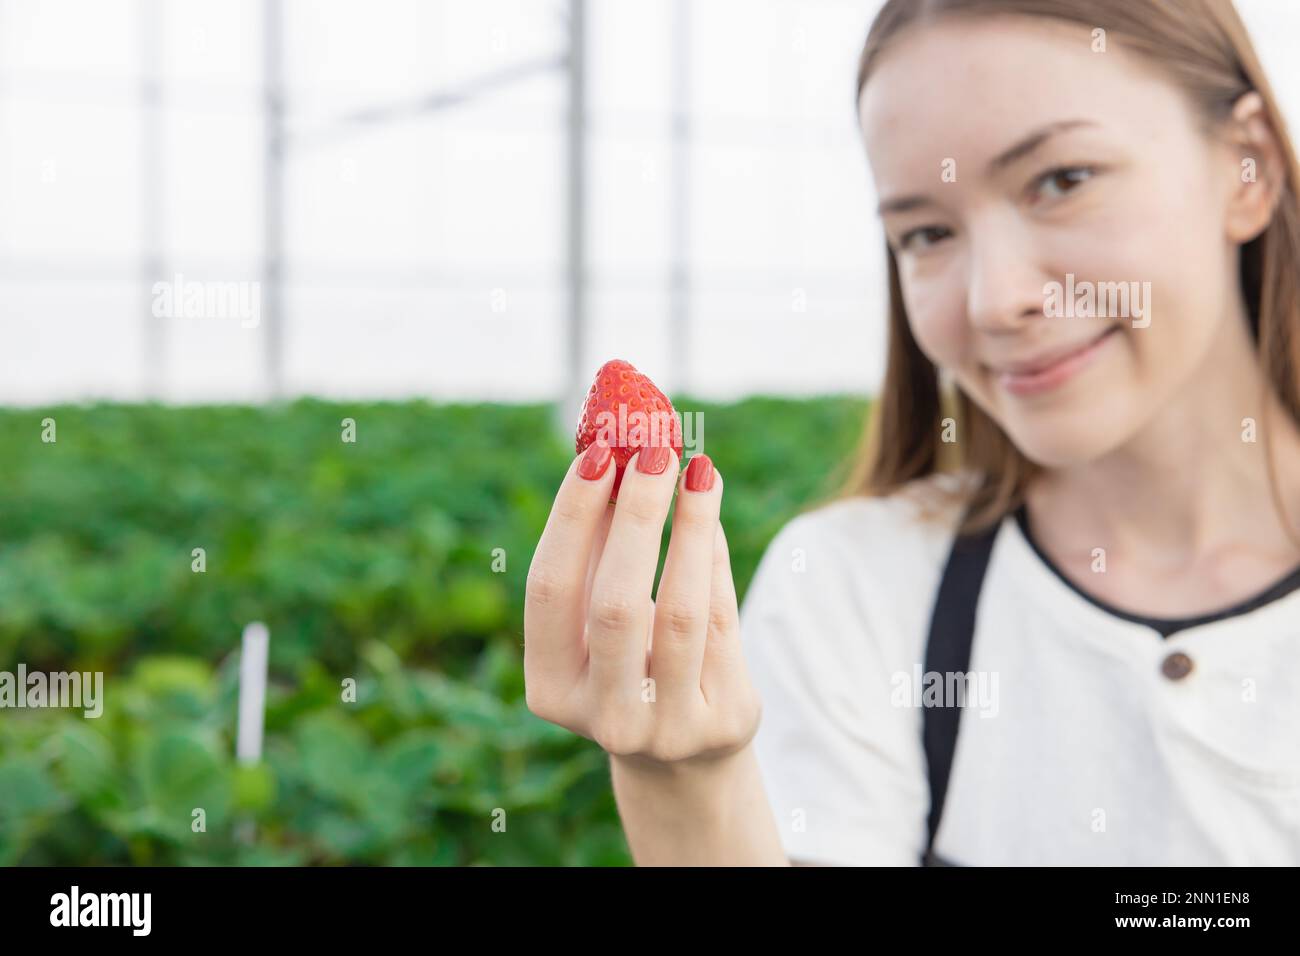 ragazza adolescente contadino mostrando grande rosso fresco fragola frutta dolce da casa verde casa fattoria biologica Foto Stock